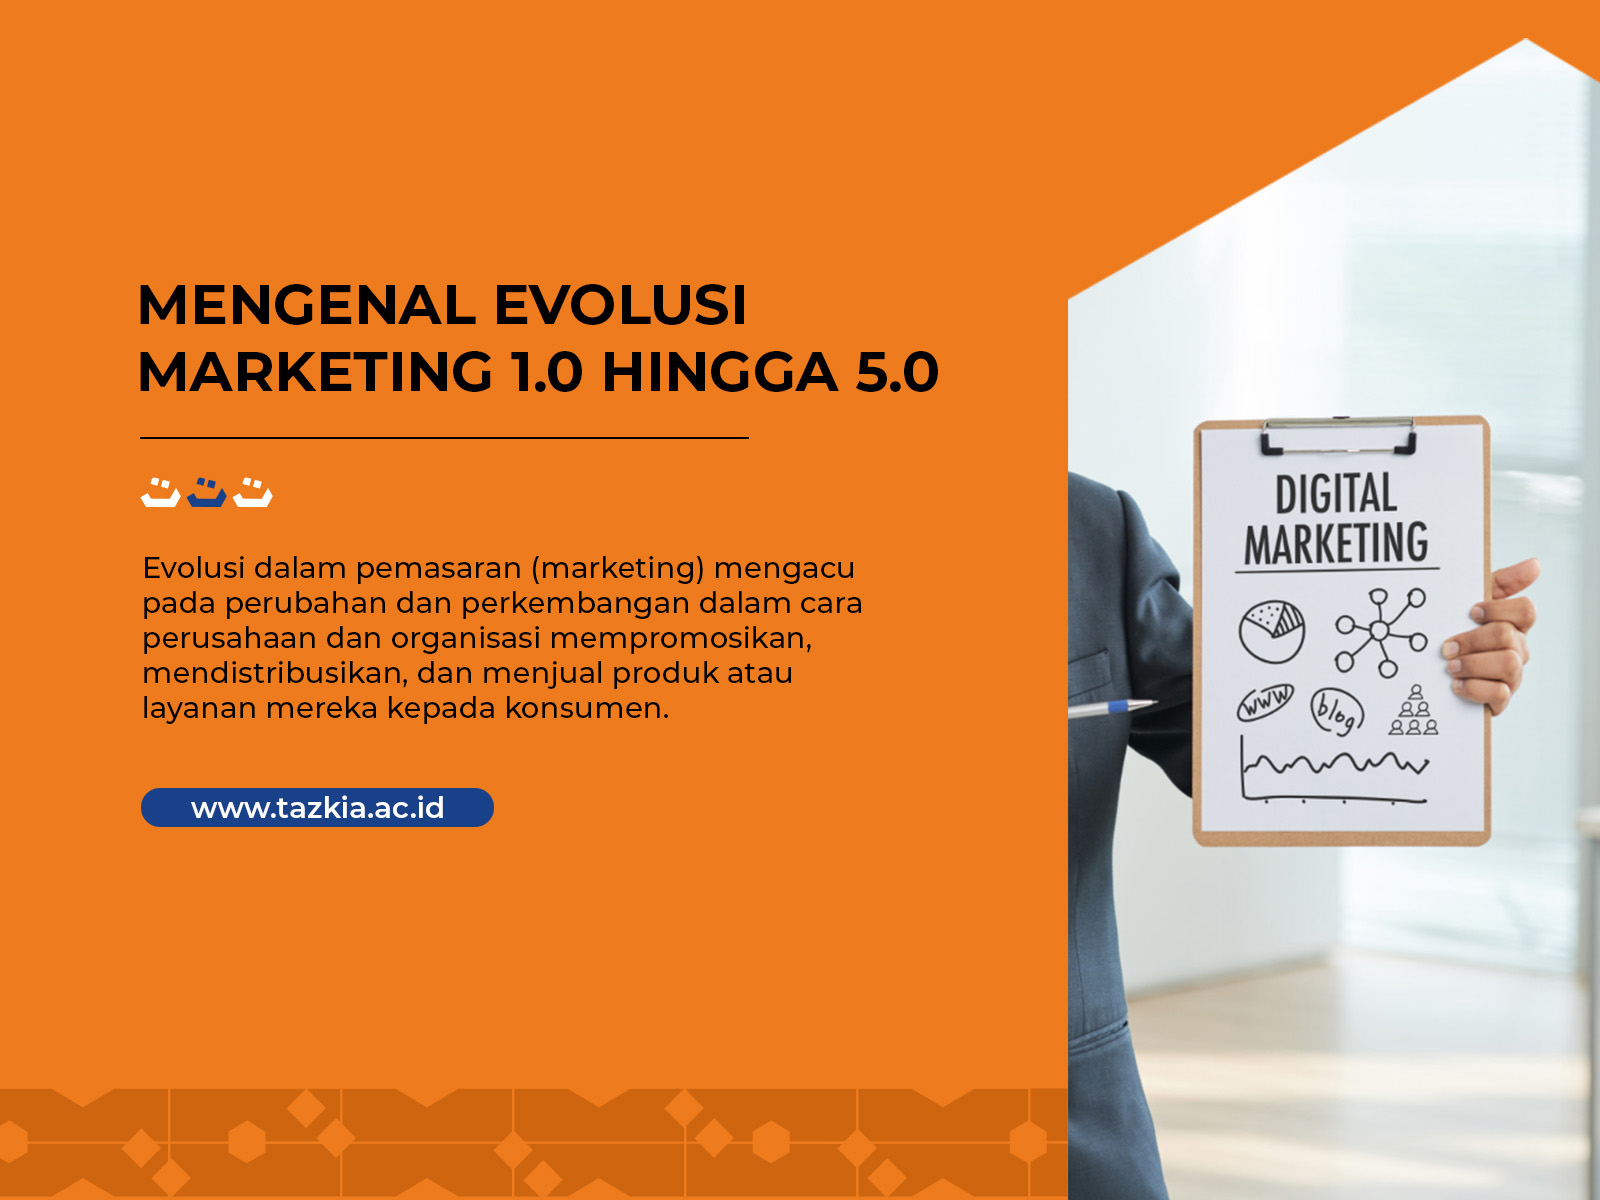 MENGENAL EVOLUSI MARKETING 1.0 HINGGA 5.0